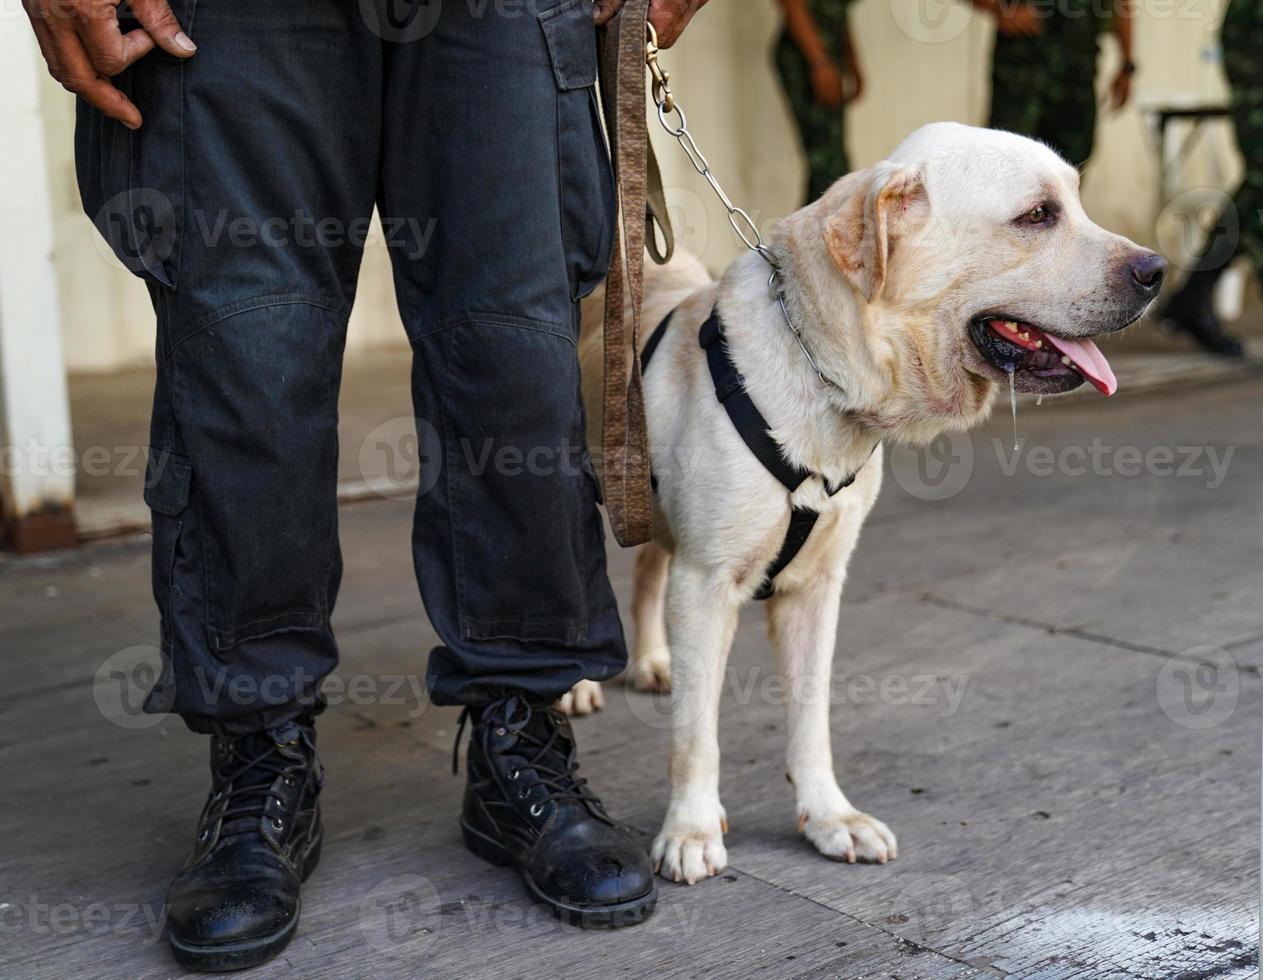 cane poliziotto in servizio, trovando la bomba nell'evento. foto